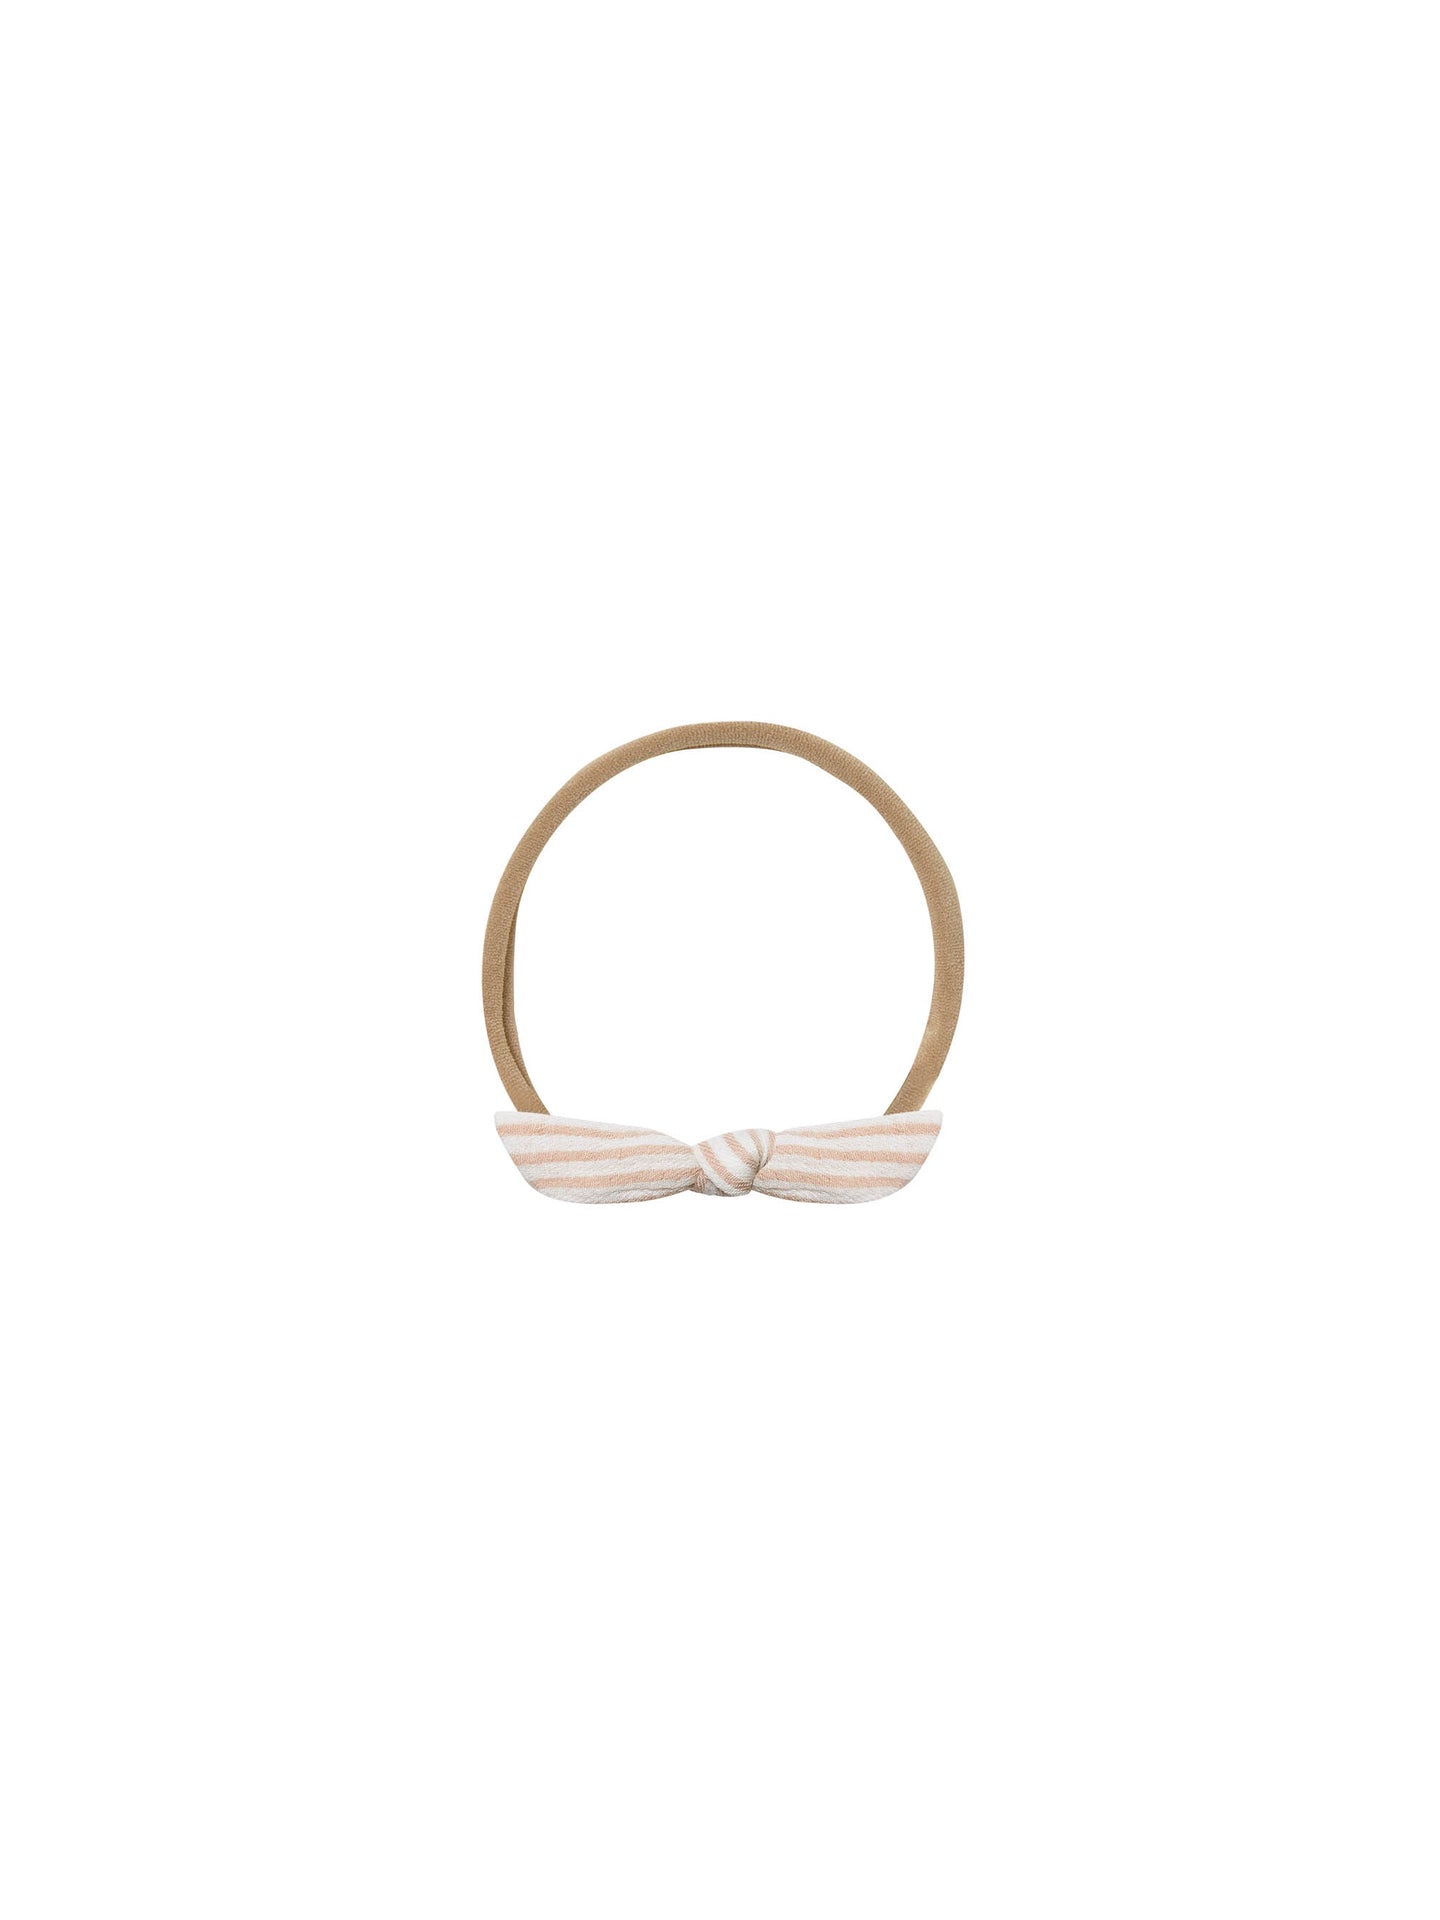 Quincy Mae - Little Knot Headband - Petal Stripe